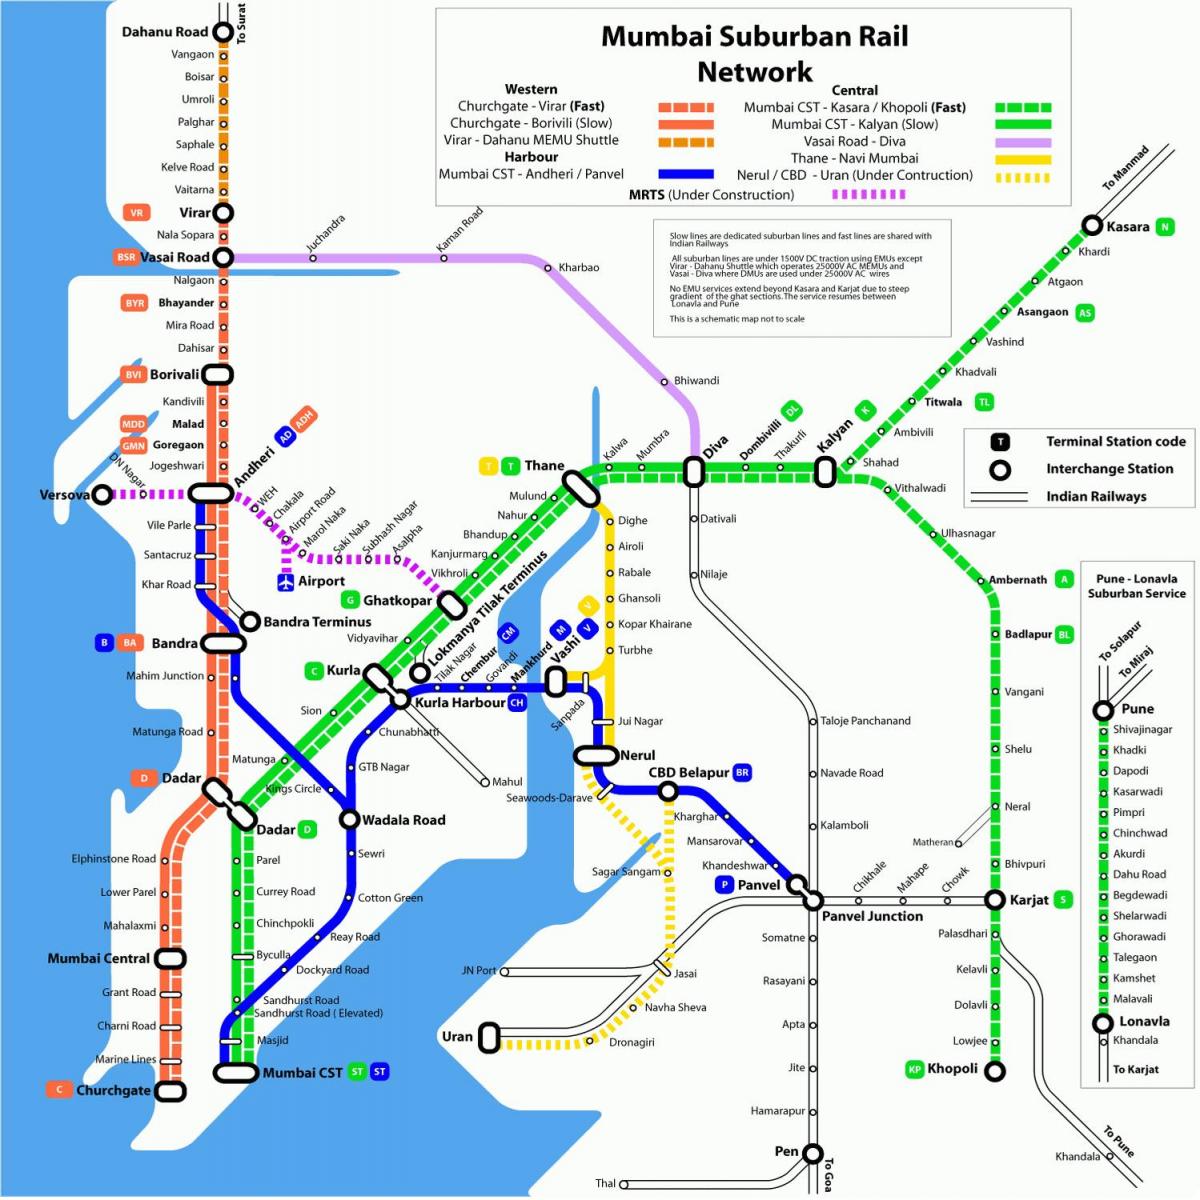 տեղական գնացքը քարտեզի վրա Մումբայի